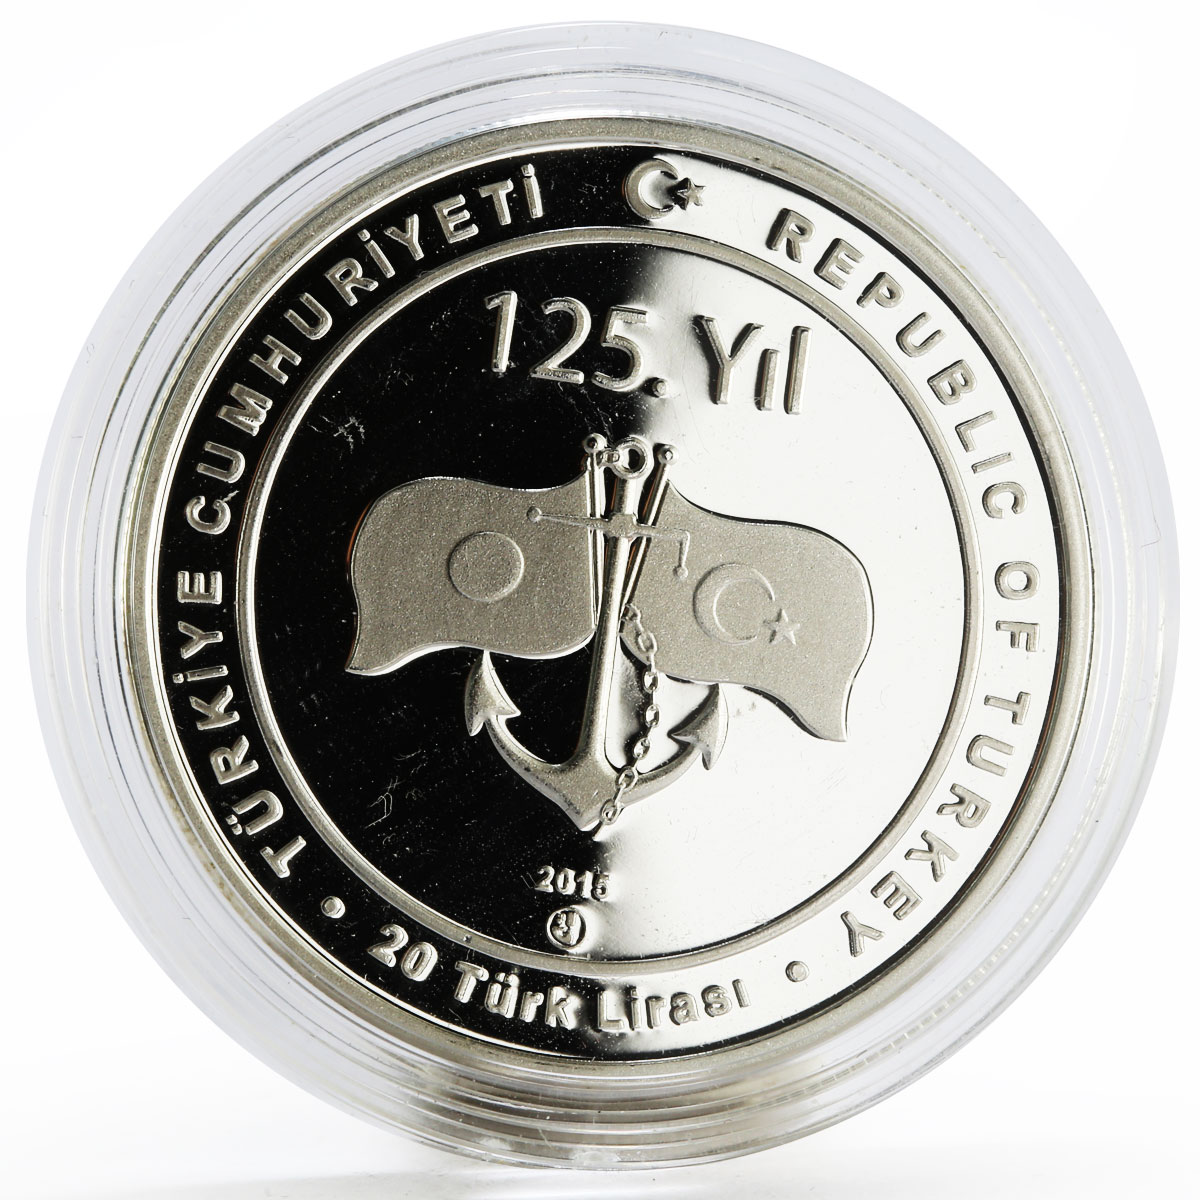 Turkey 20 lira 125th Anniversary of Ottoman Fregate Ertugrul silver coin 2015